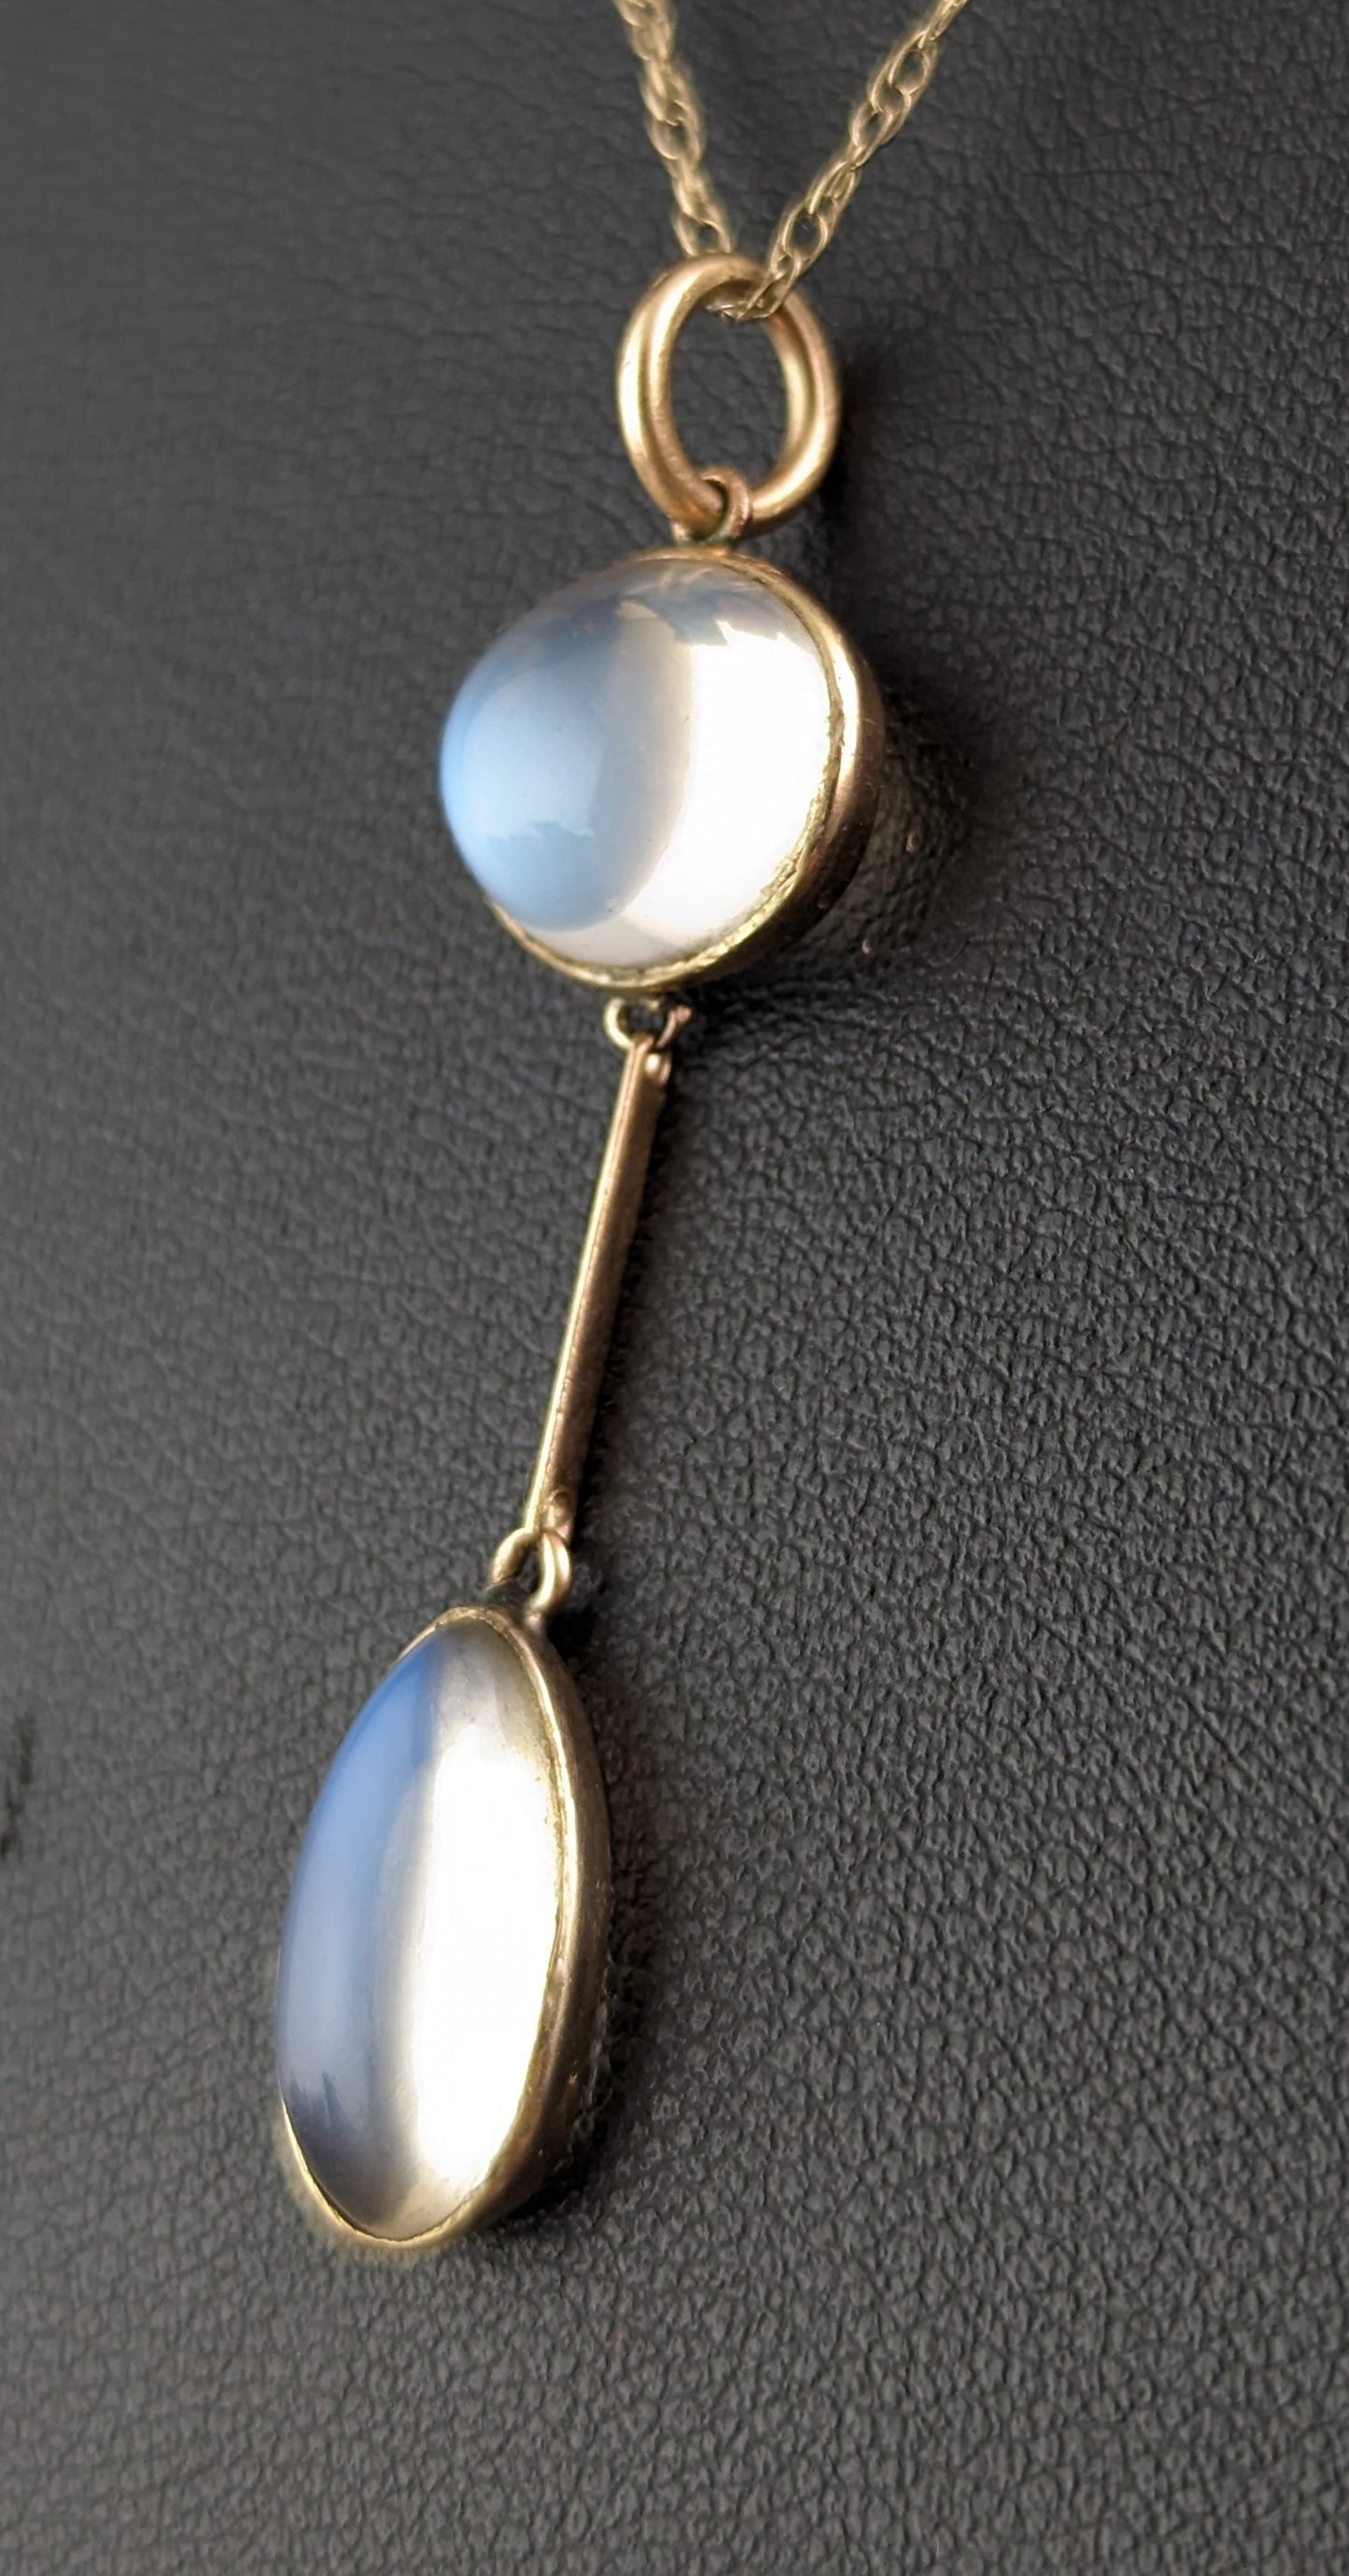 Antique Art Deco Moonstone pendant necklace, 9ct gold